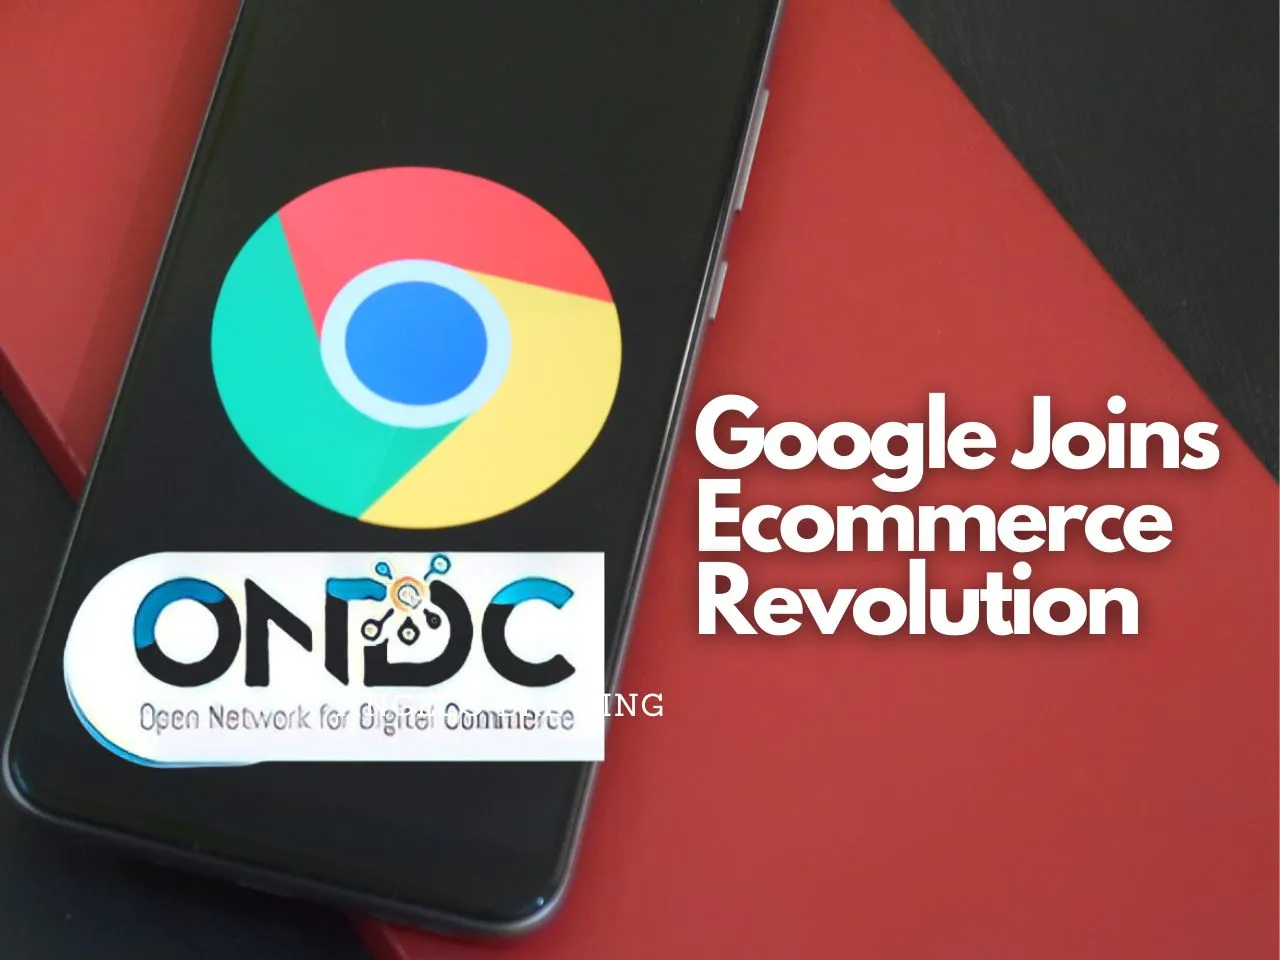 ONDC with Google 